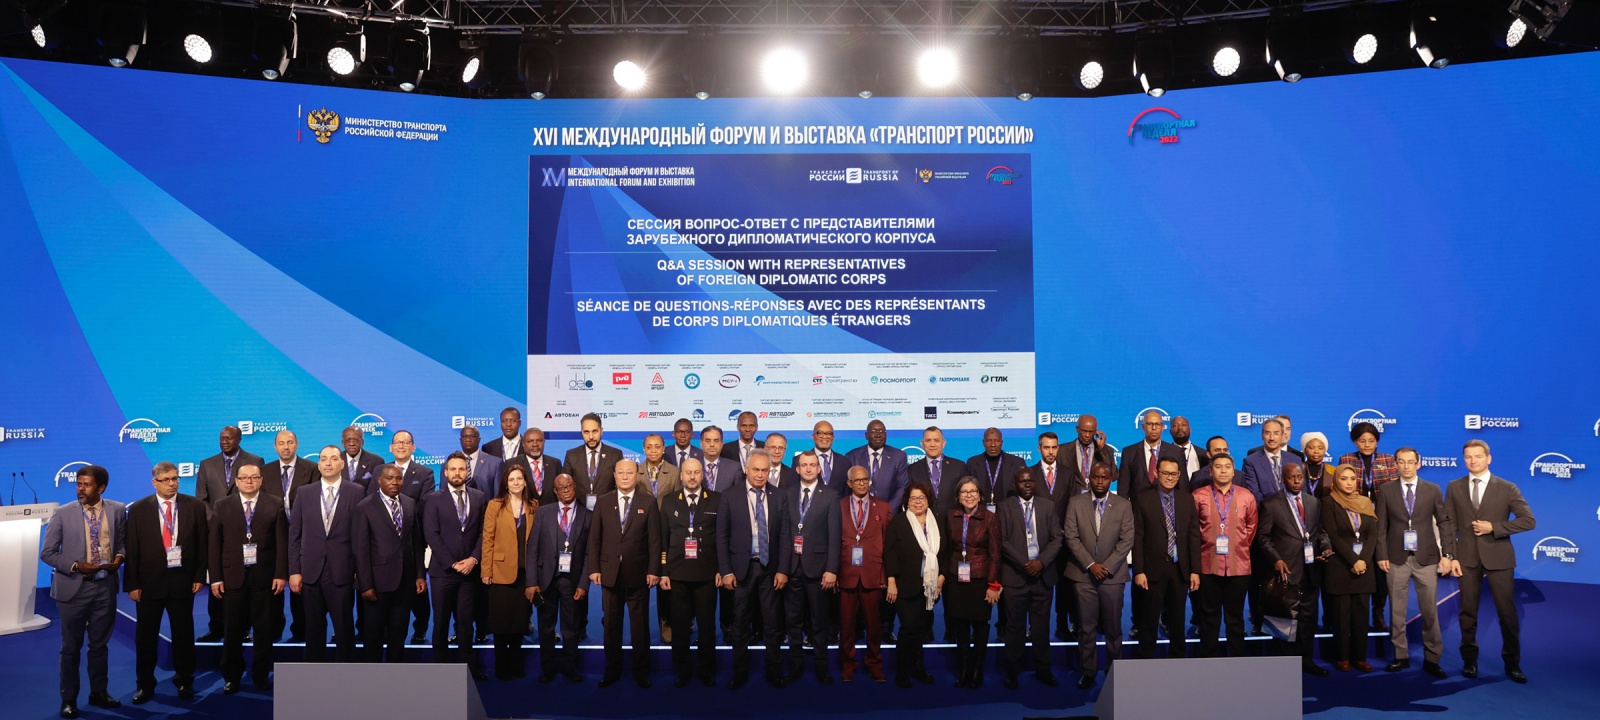  В заключительный день Форума «Транспорт России» состоялась сессия «Вопрос-ответ» с послами иностранных государств